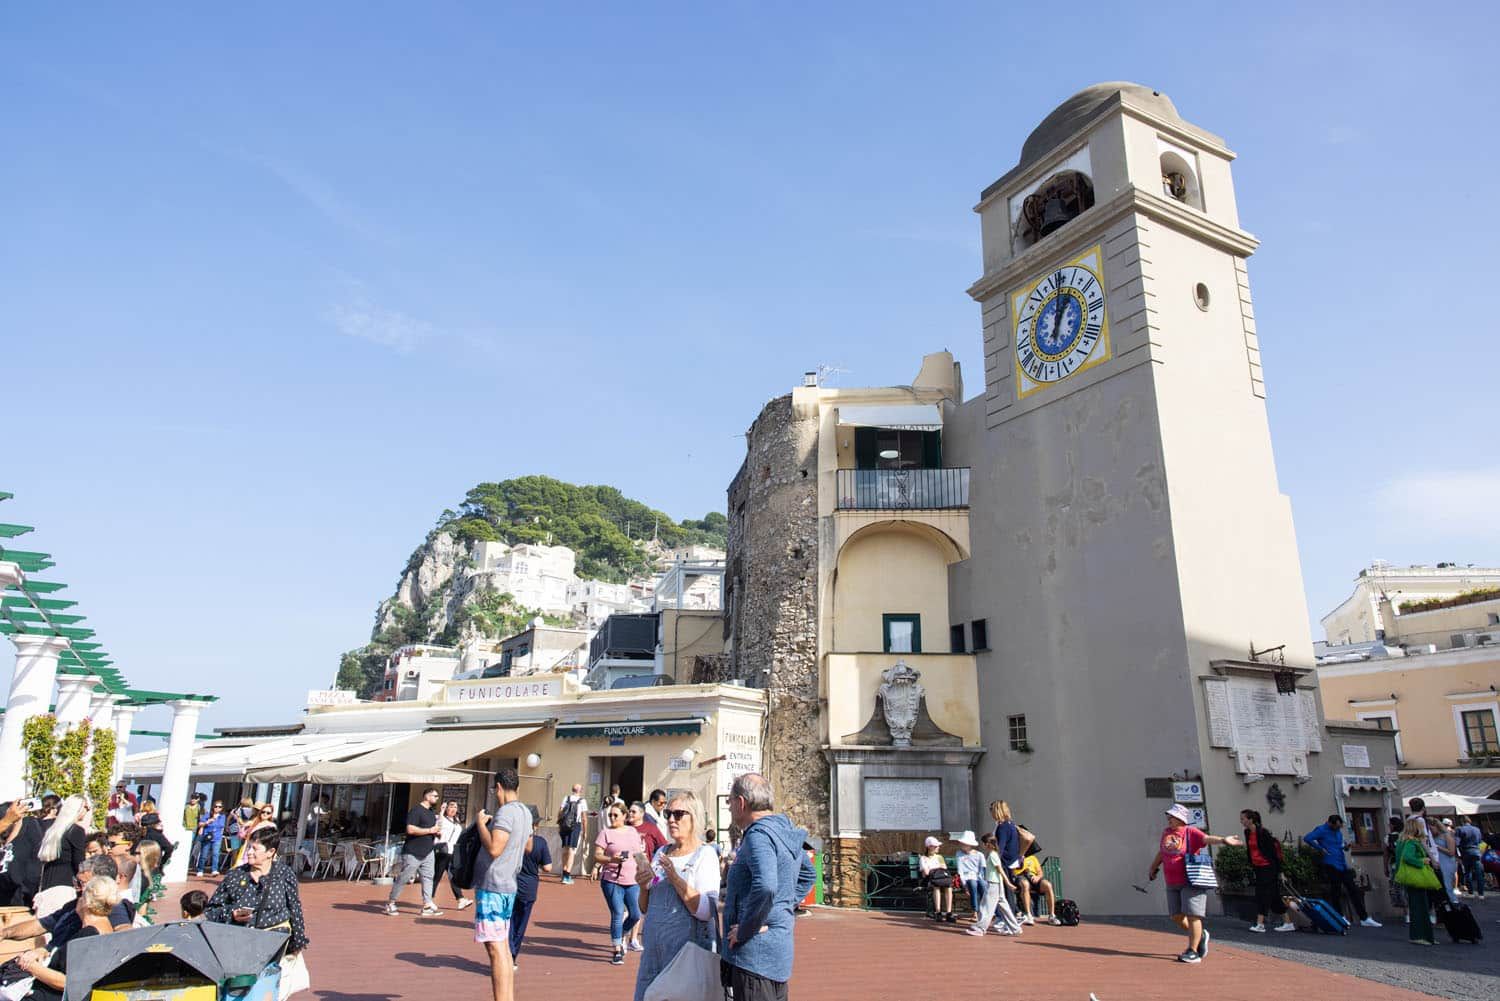 Piazza Umberto I Capri | Best things to do in Capri